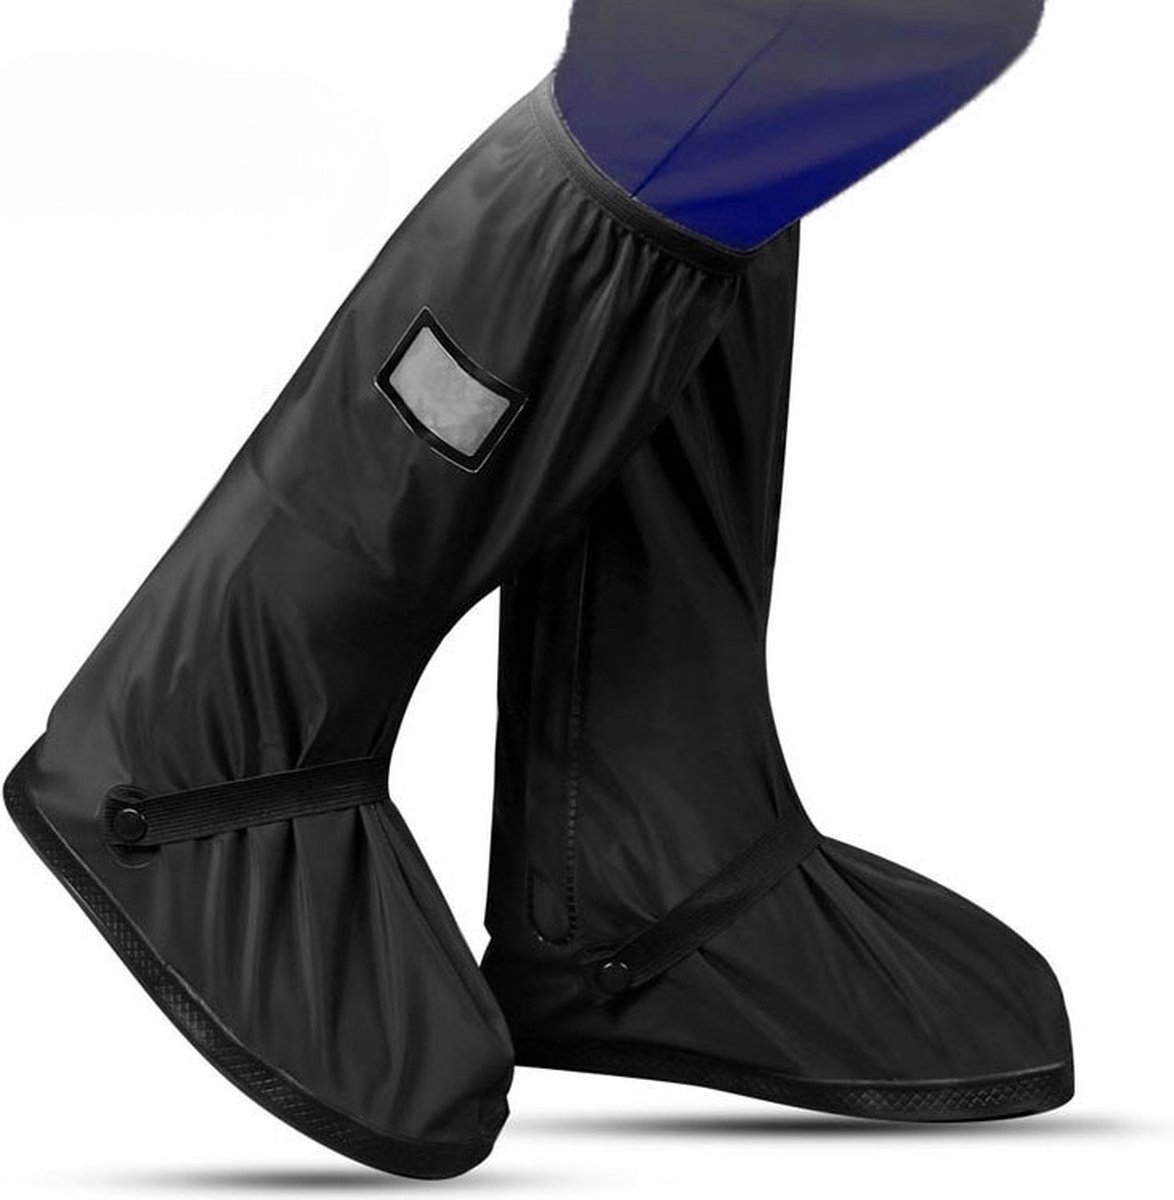 EASTWALL Cover Pro schoenhoezen - Schoenovertrek herbruikbaar - Bescherm je schoenen tegen water, modder en sneeuw - Universele waterdichte overschoenen - Schoenbeschermers - Anti-slip - Trekkoord afsluiting - Zwart - Maat 41-42